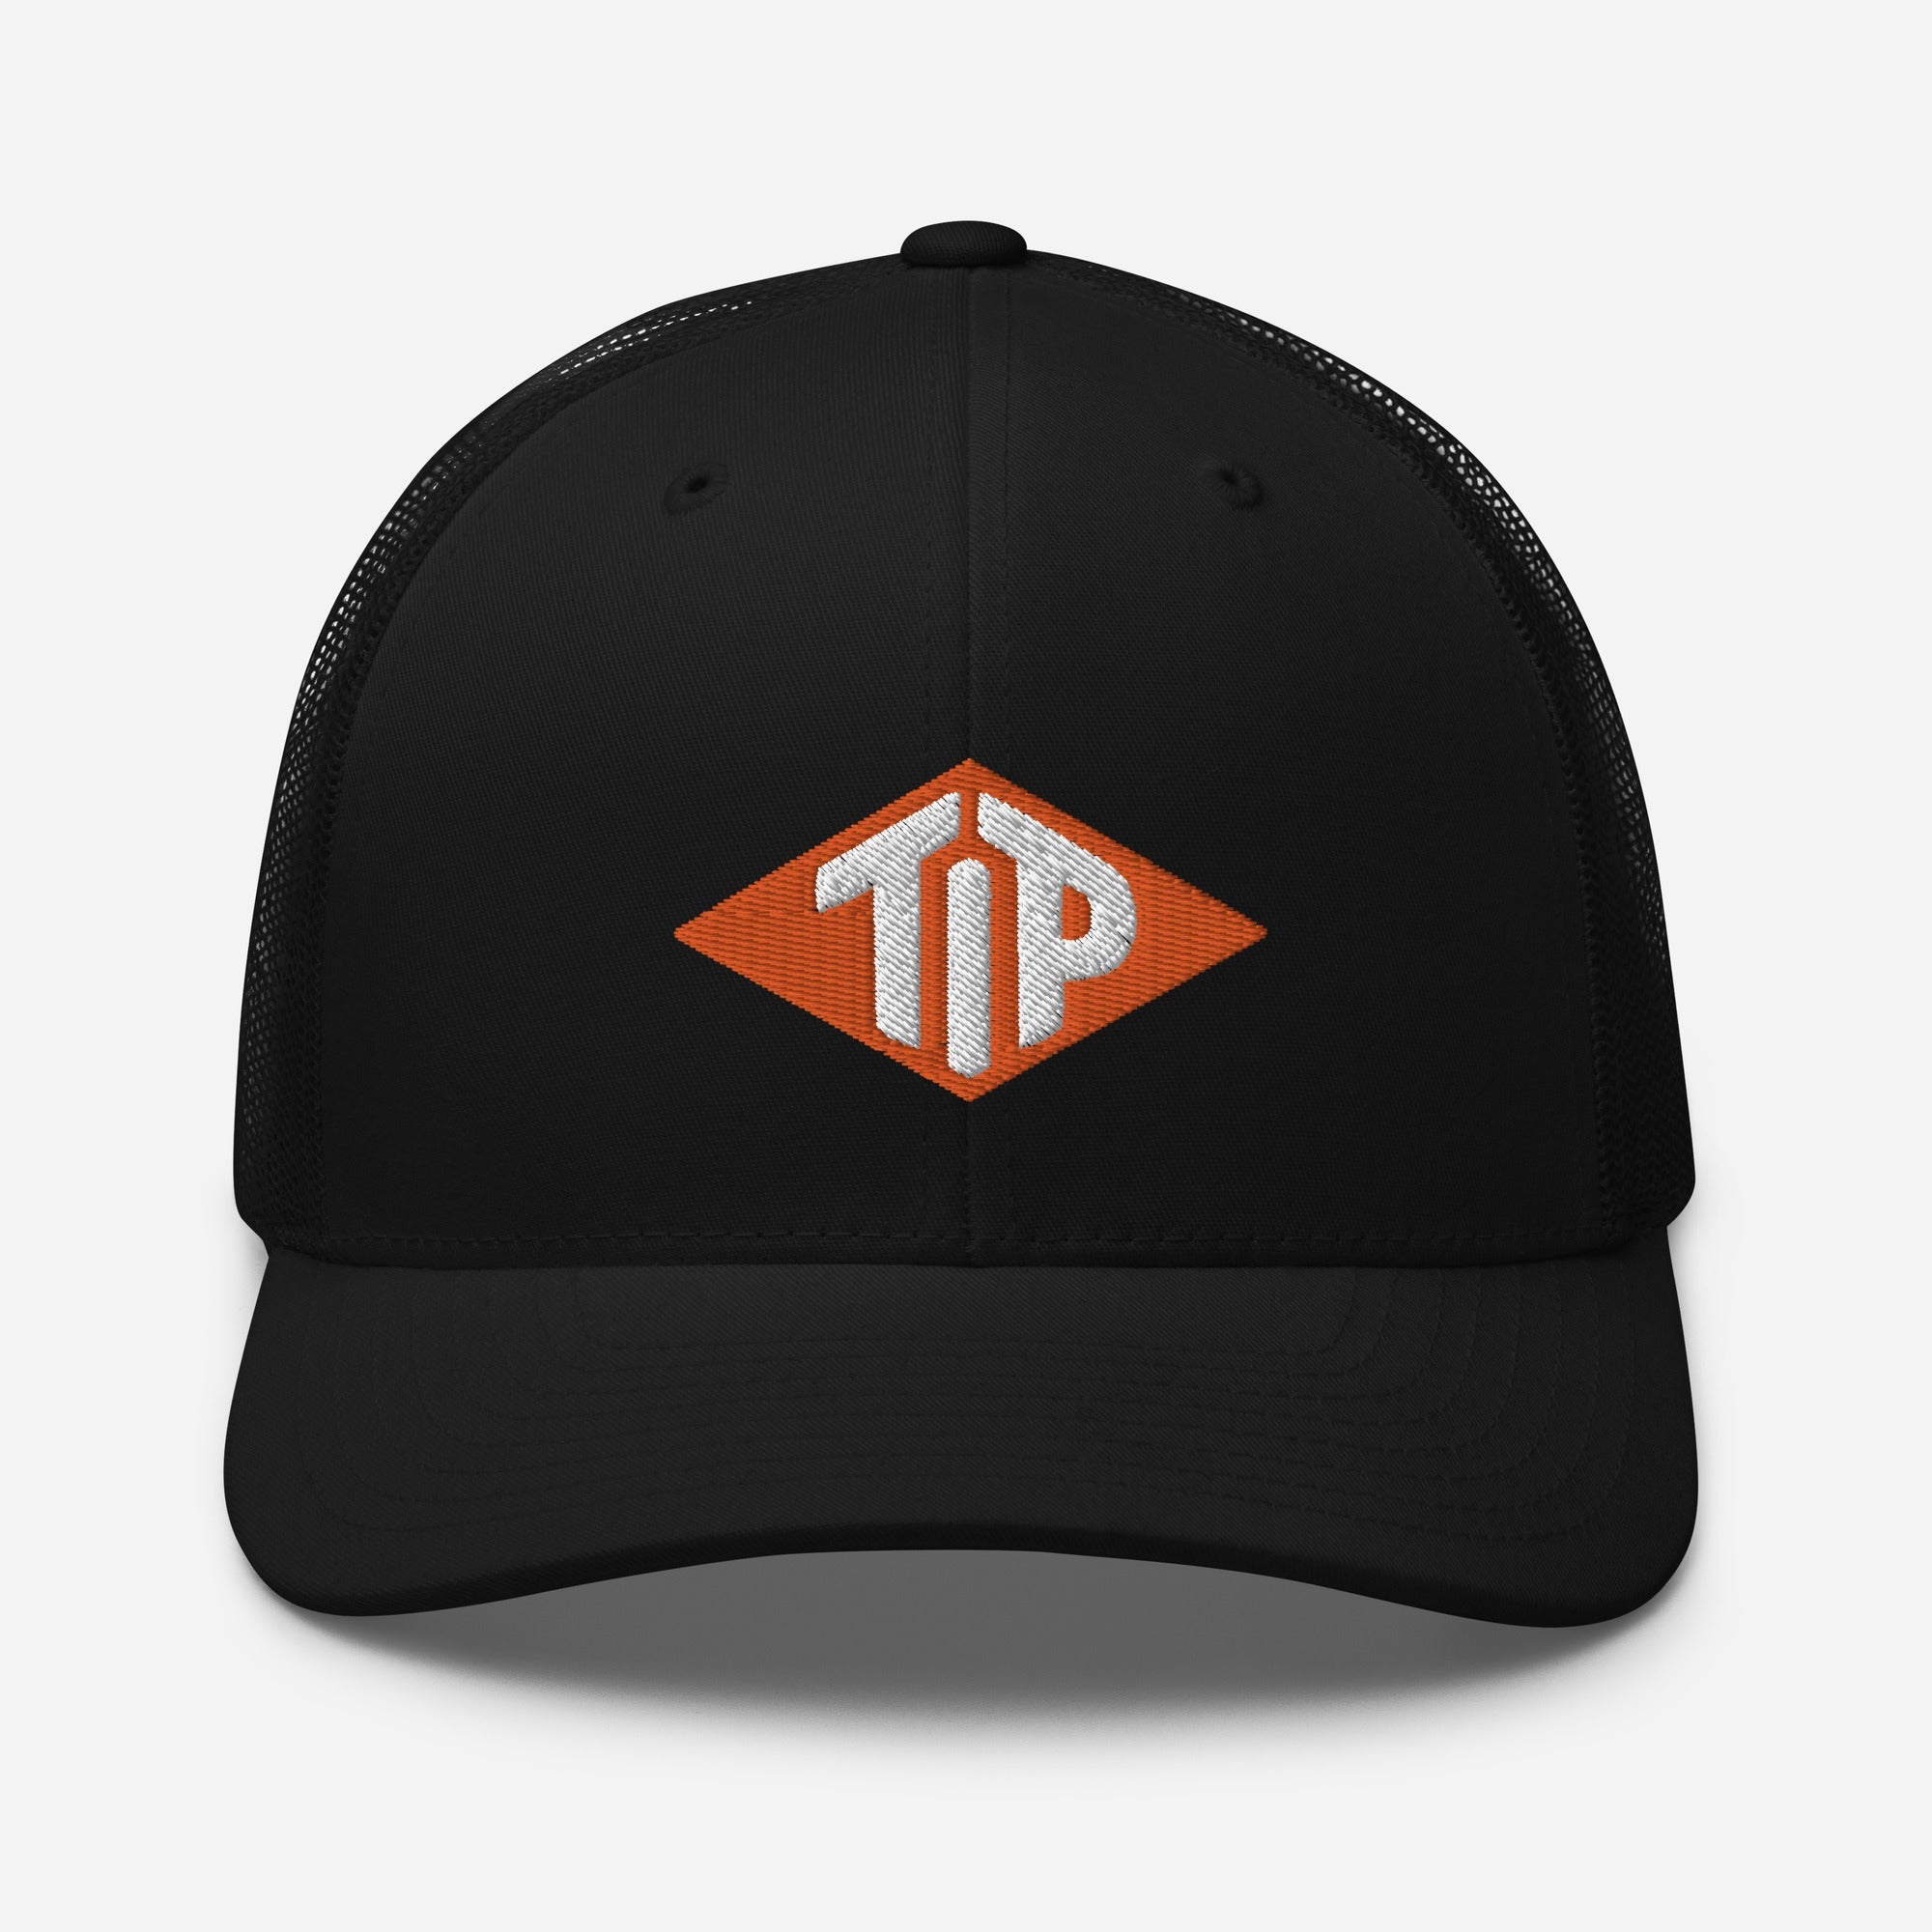 TIP Trucker Cap